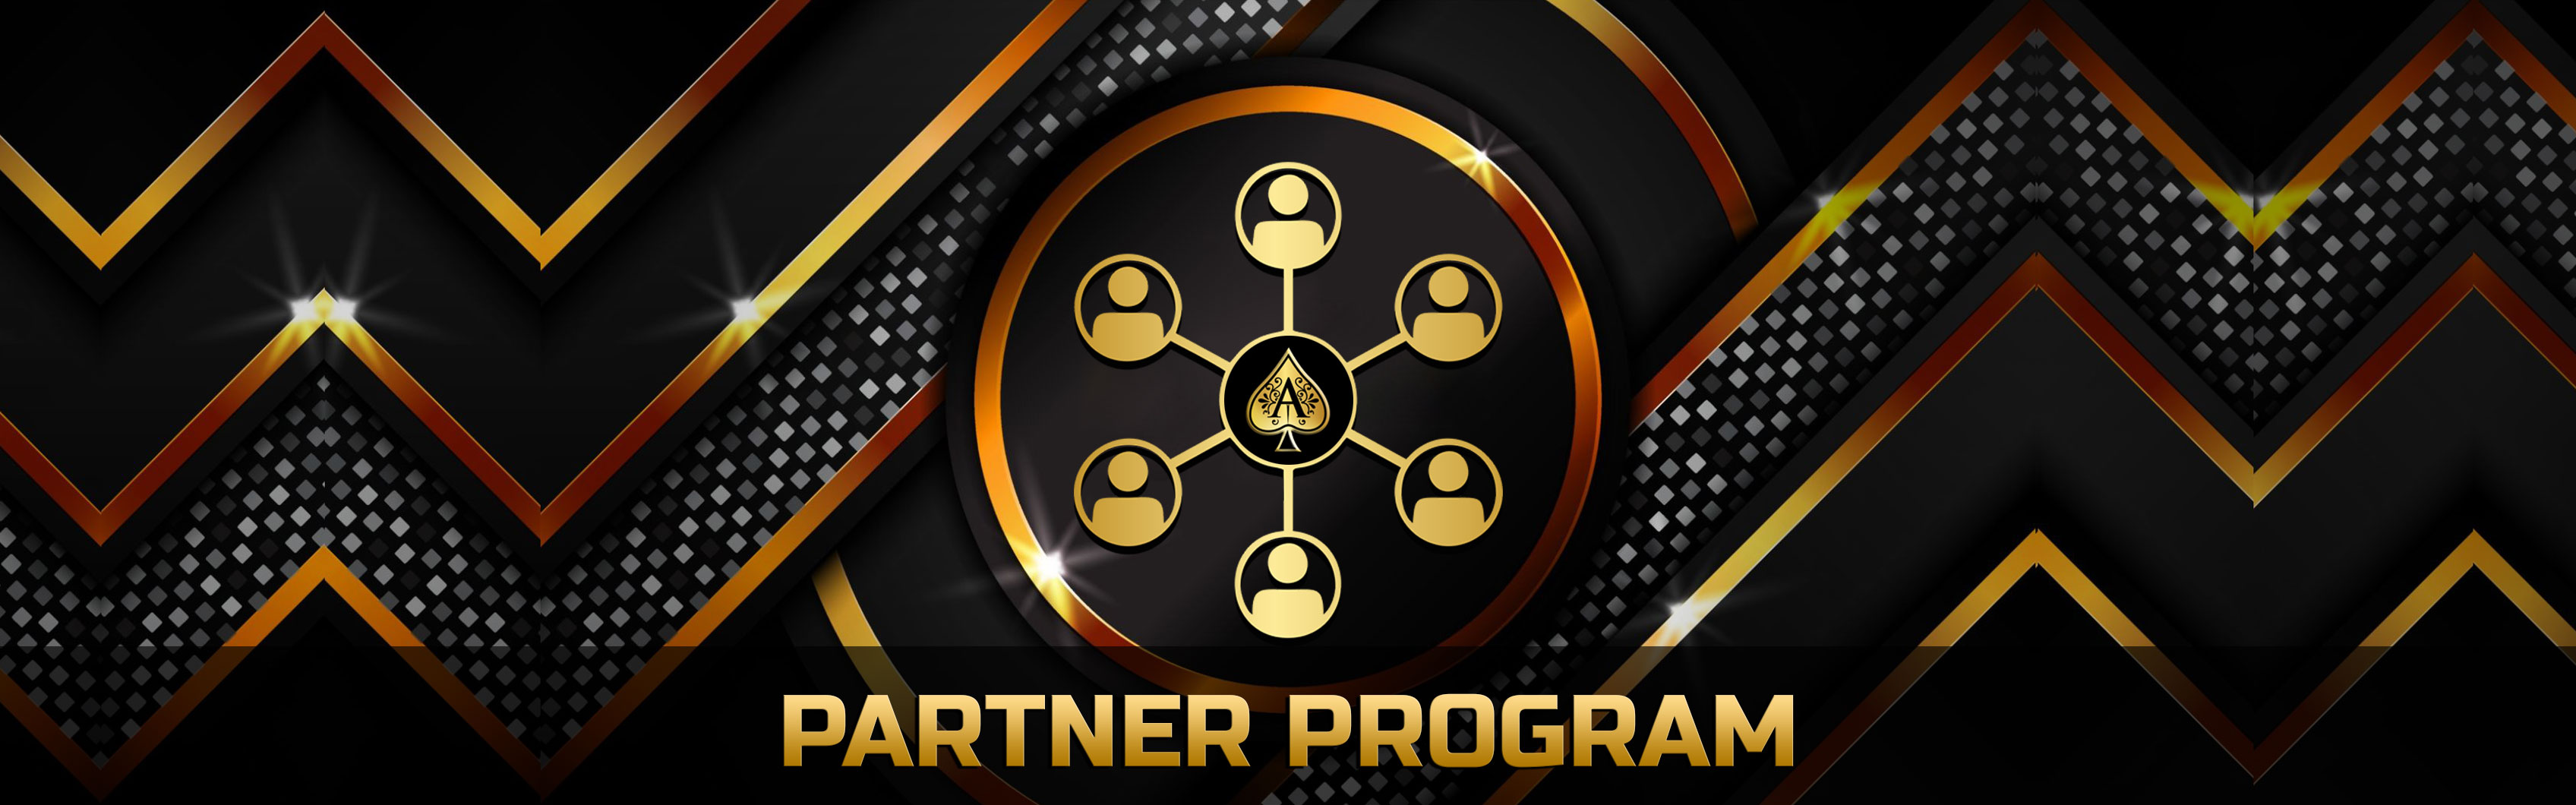 AceHigh Poker Partner Program